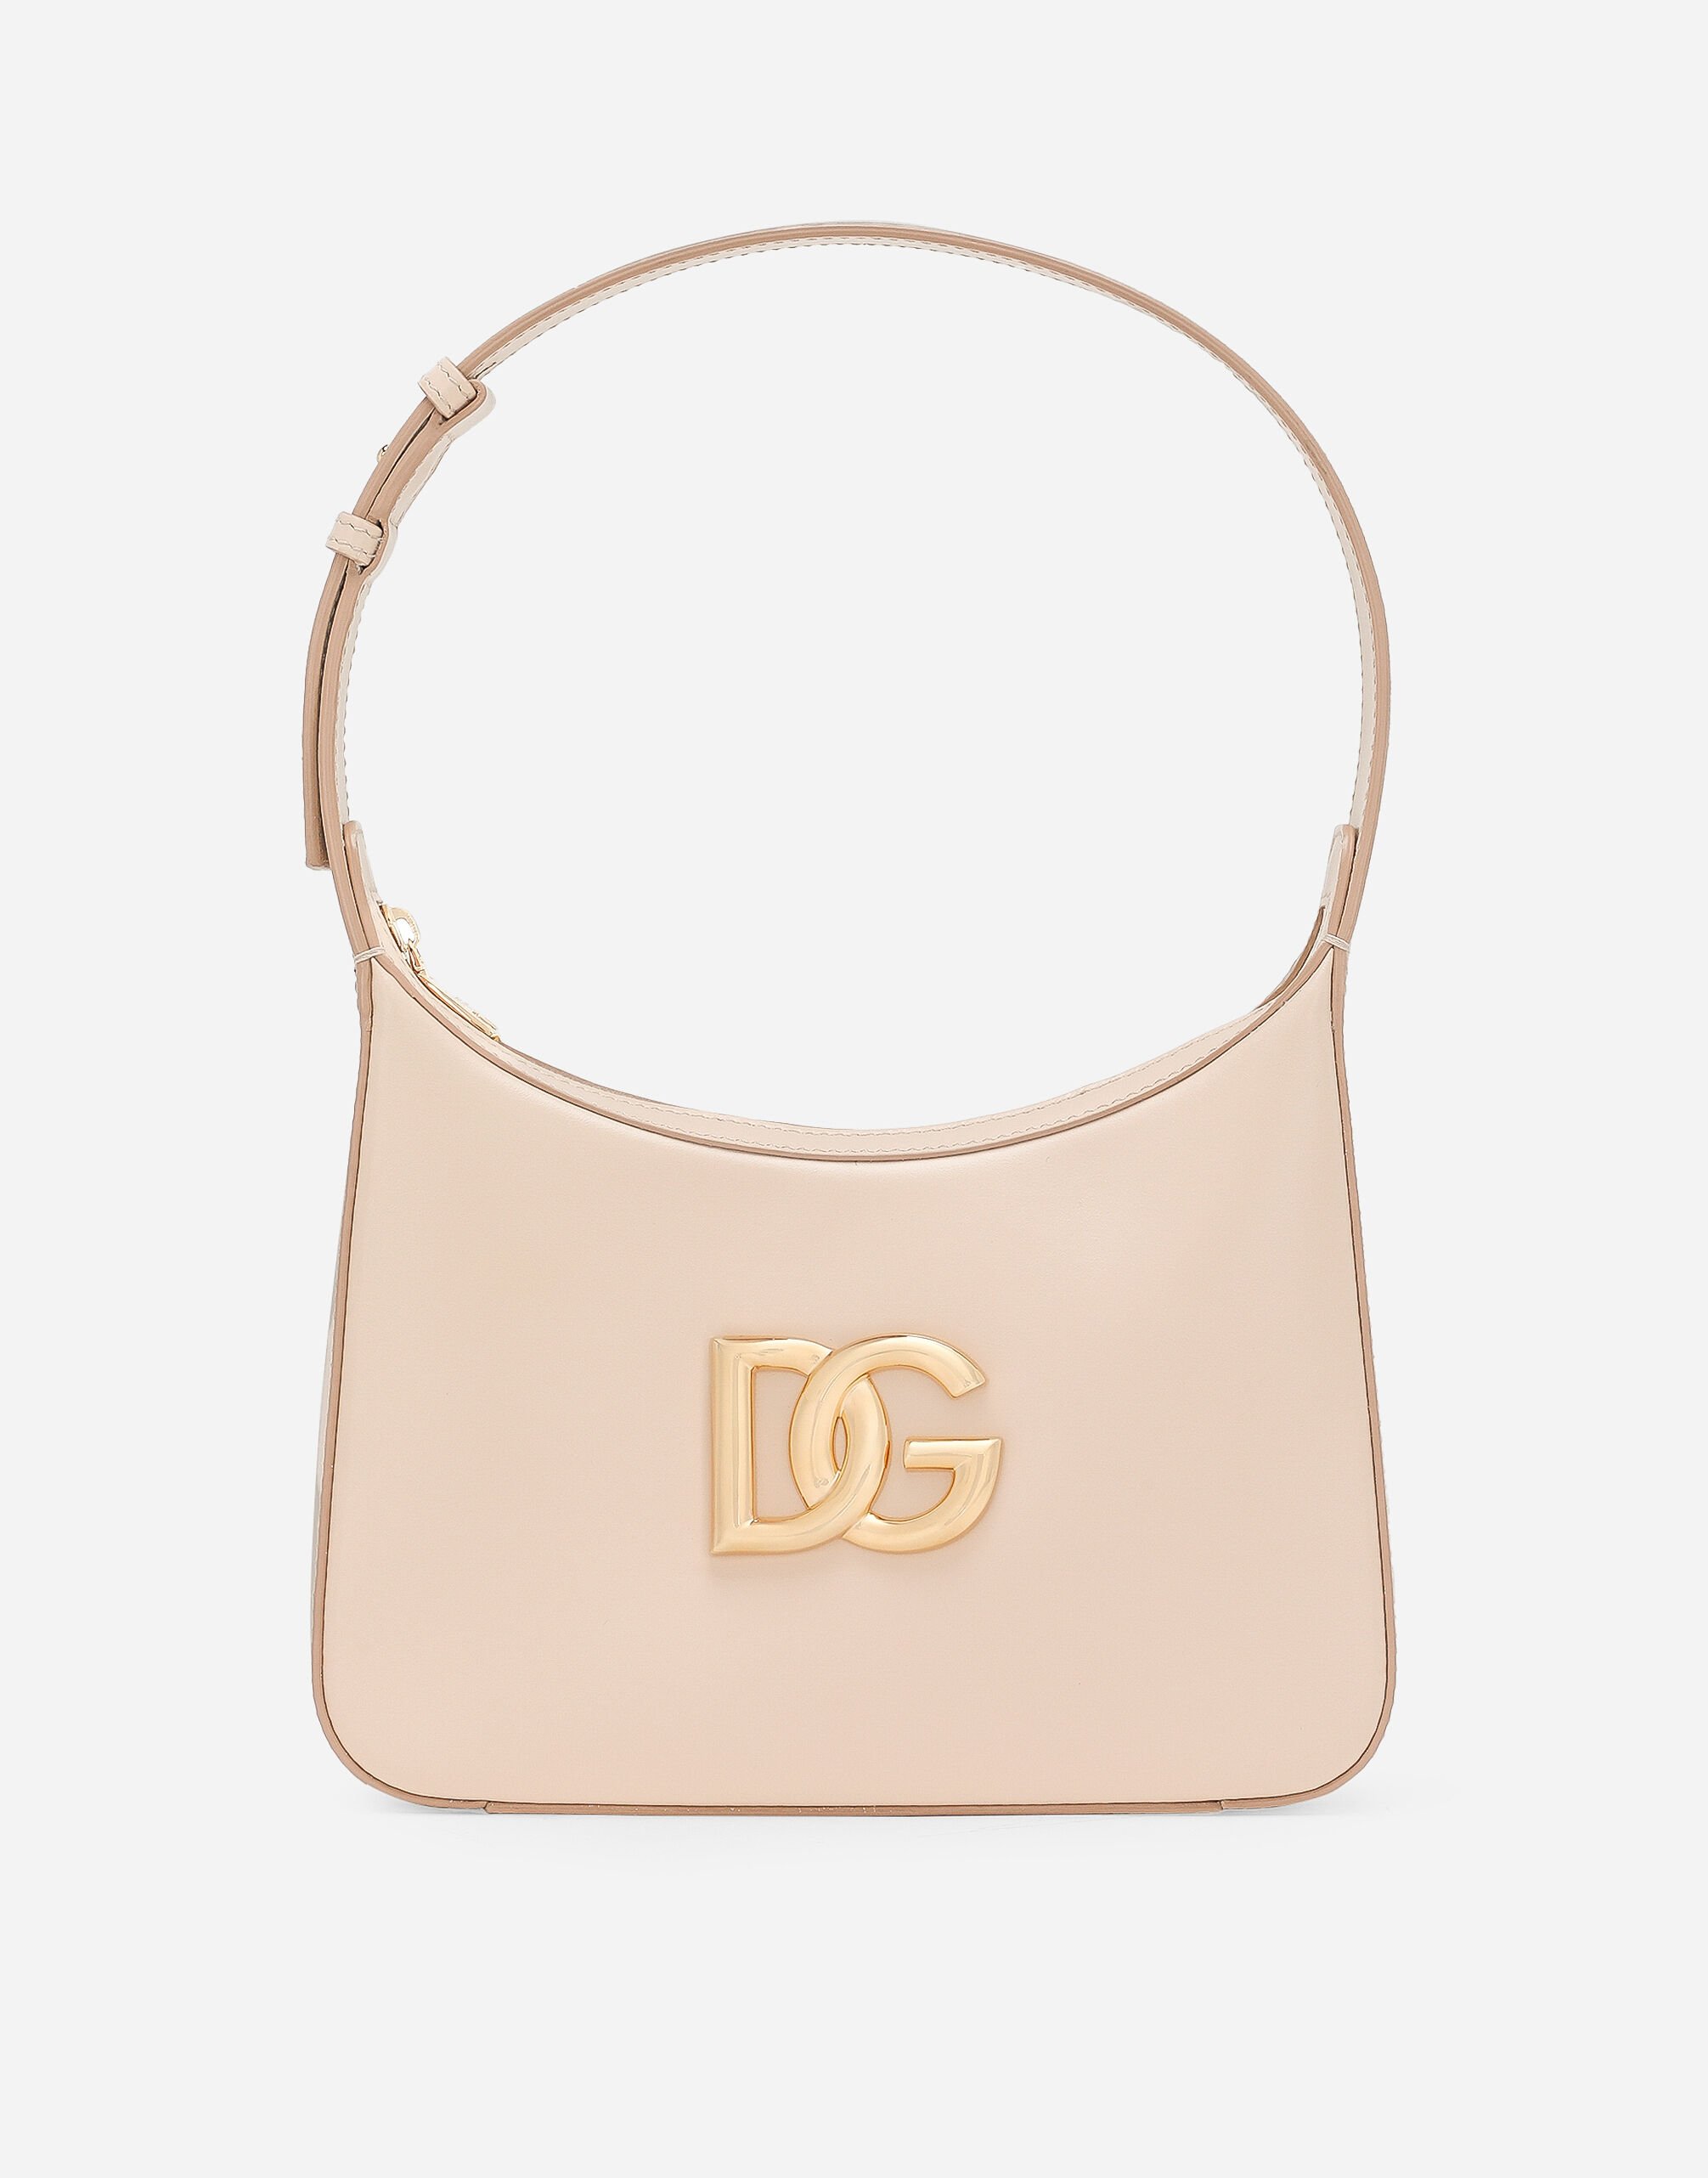 Dolce & Gabbana 3.5 shoulder bag Multicolor BB6002A2Y84